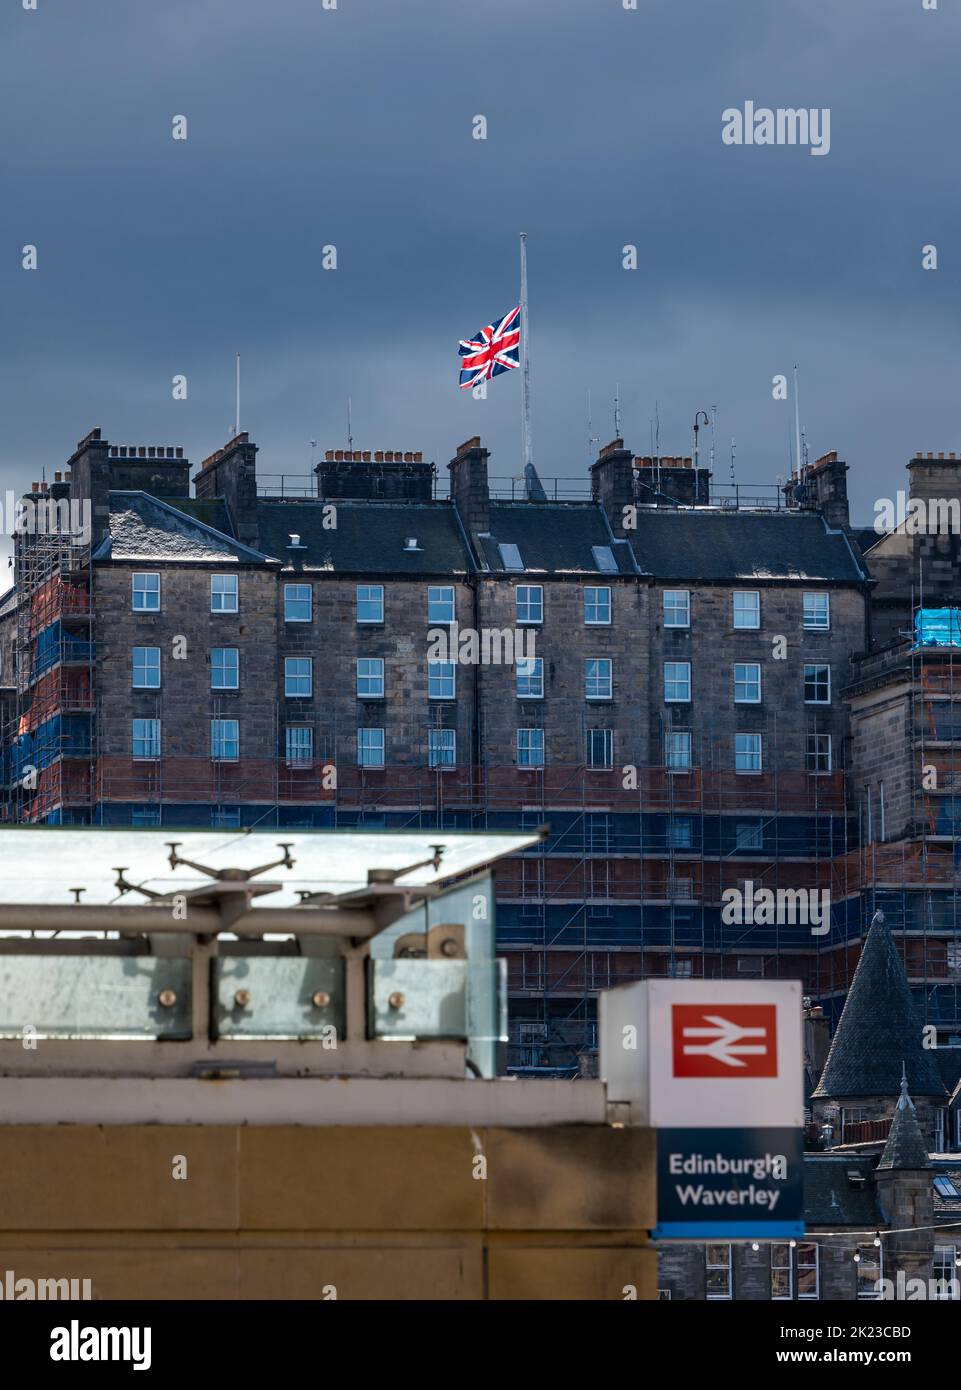 Drapeau Union Jack volant à mi-mât après la mort de HM Queen Elizabeth II sur le toit du bâtiment du centre-ville d'Édimbourg, Écosse, Royaume-Uni Banque D'Images